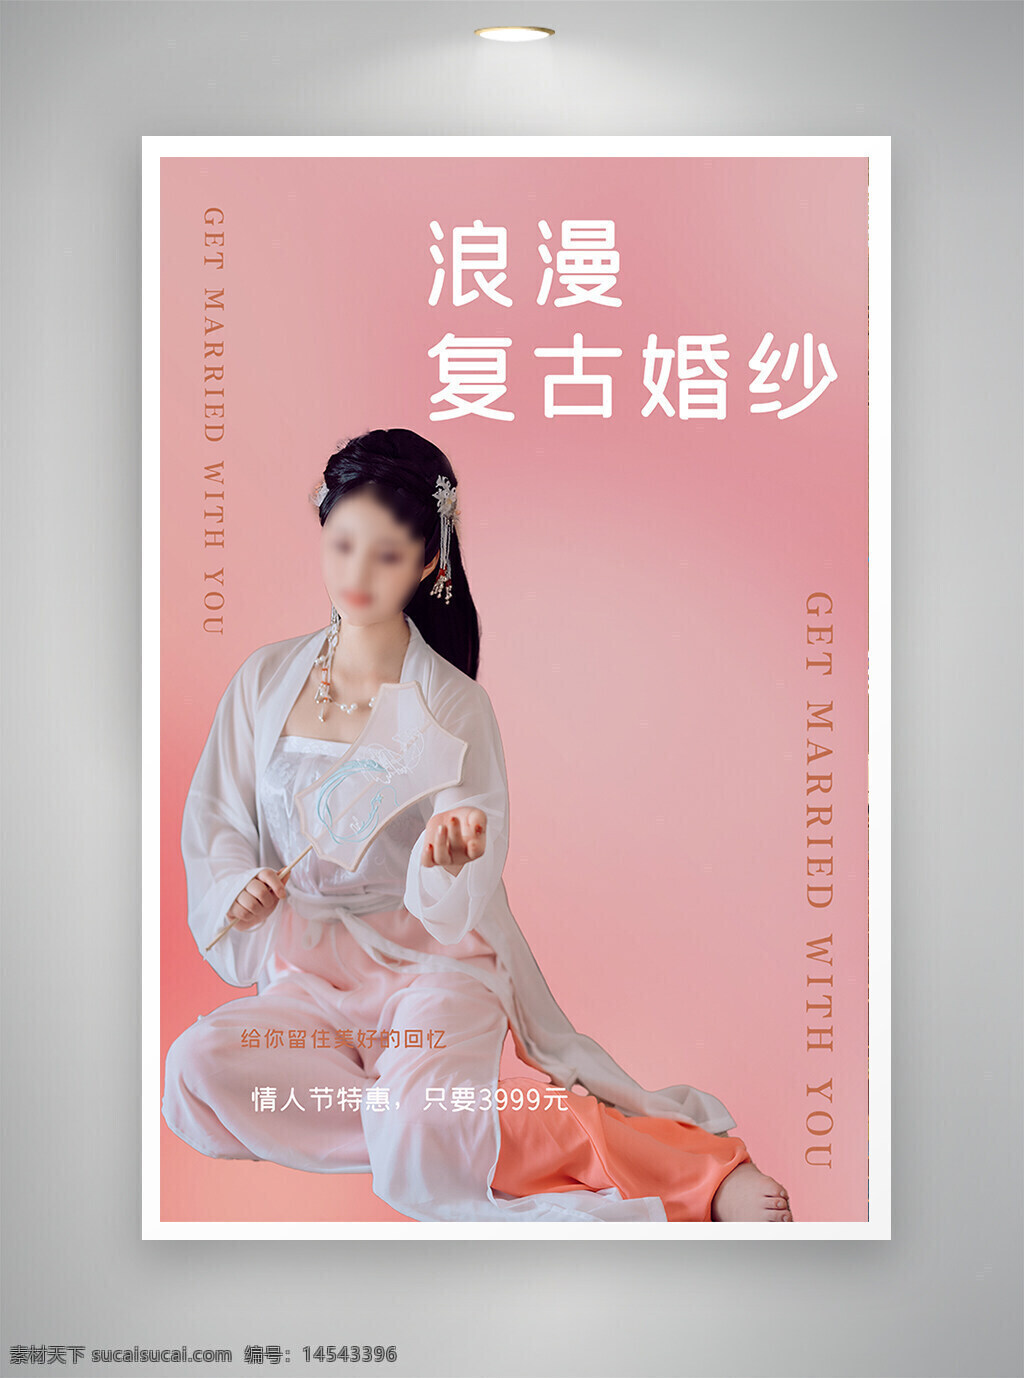 中国风海报 促销海报 节日海报 古风海报 复古婚纱